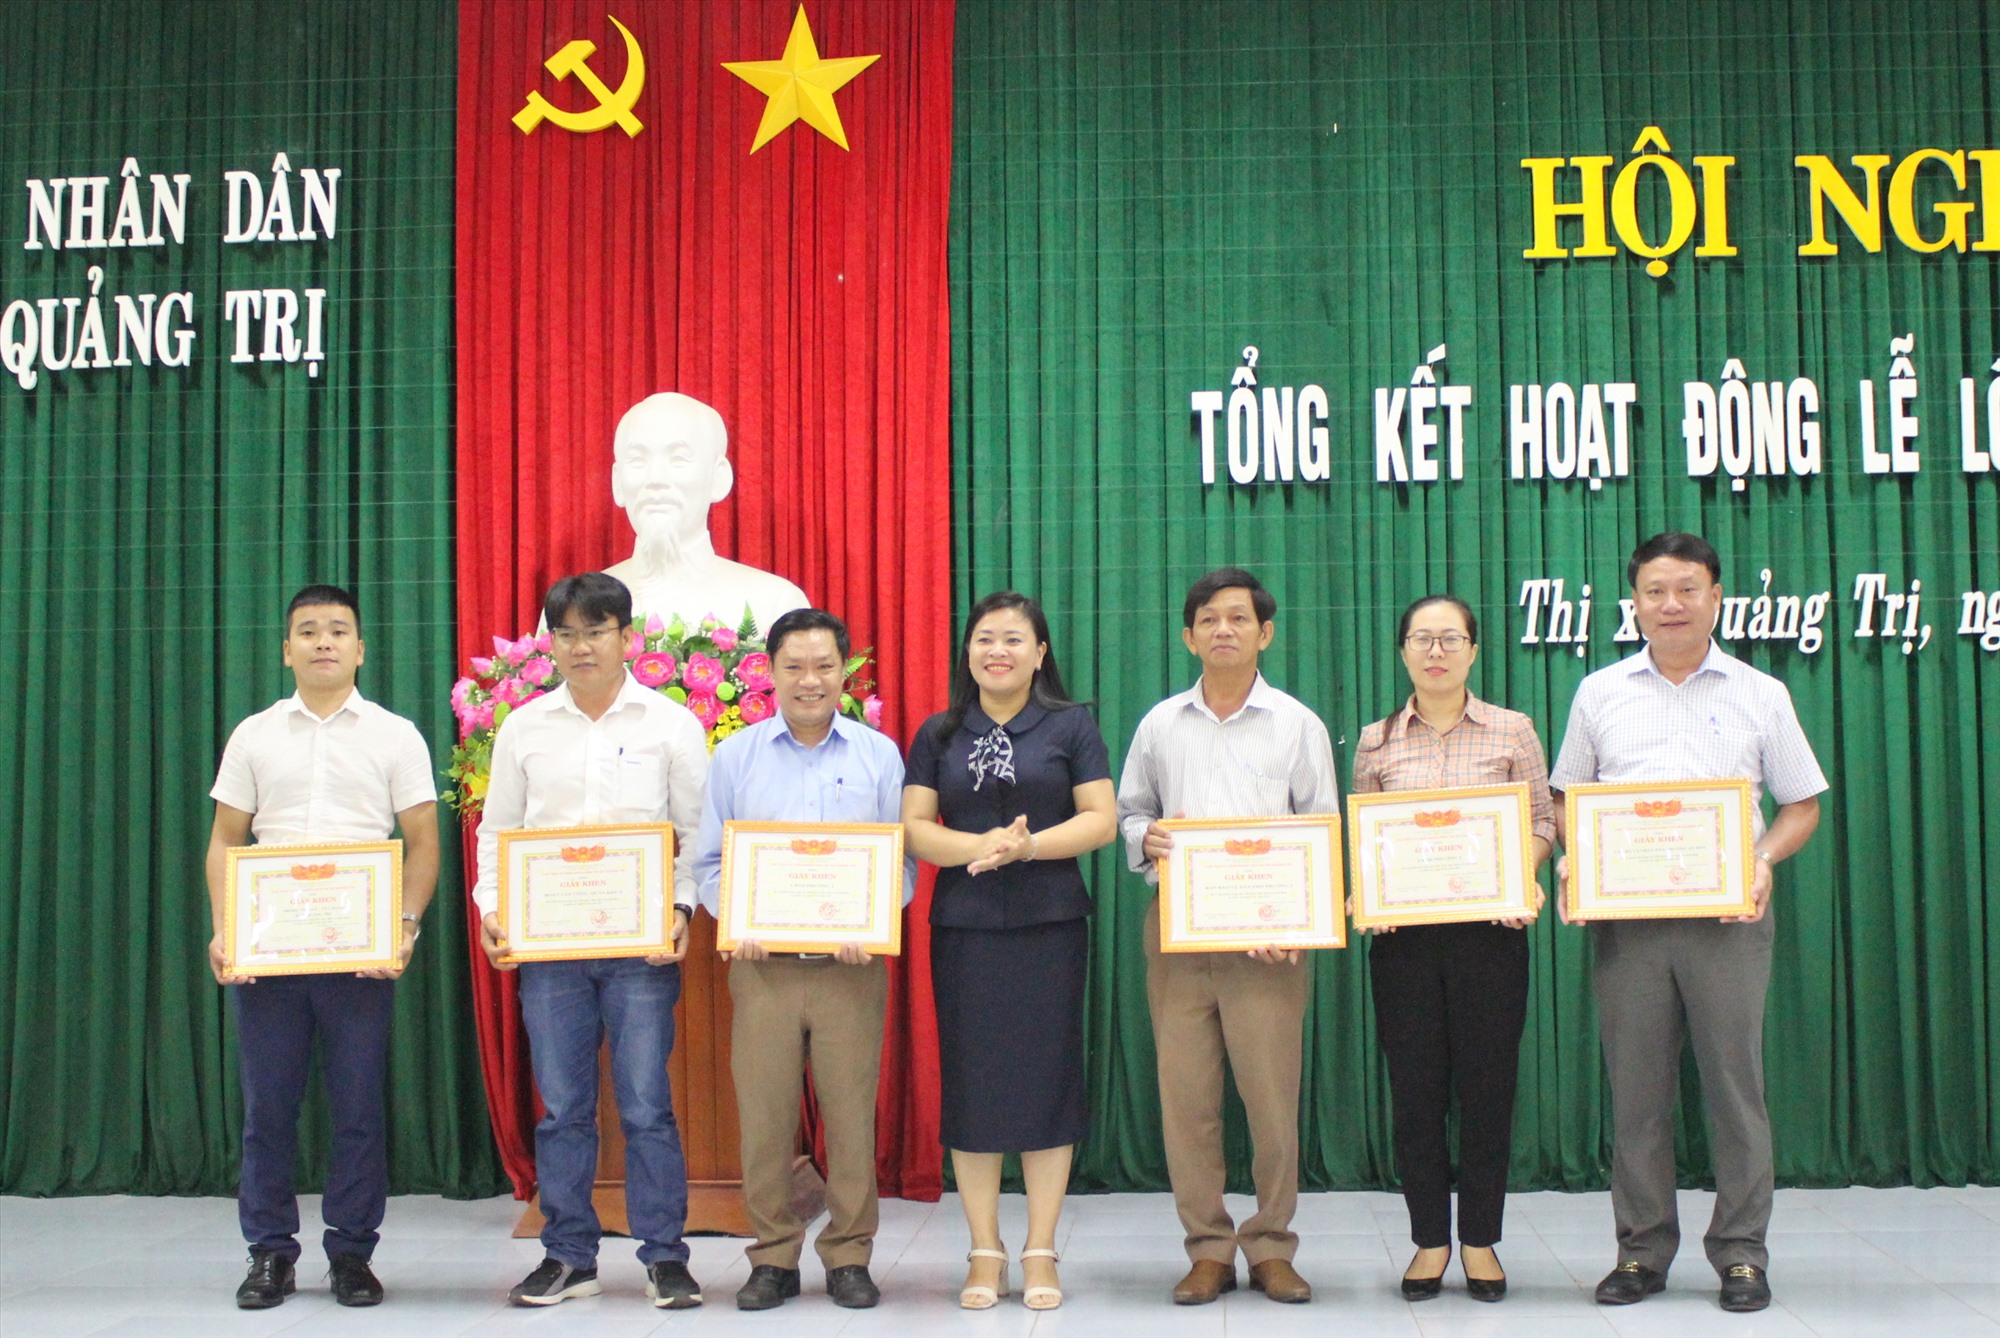 Chủ tịch UBND thị xã Quảng Trị Nguyễn Thị Mai Anh trao Giấy khen cho các tập thể đã có thành tích trong việc triển khai, thực hiện các hoạt động kỷ niệm các ngày lễ lớn năm 2022 - Ảnh: N.T